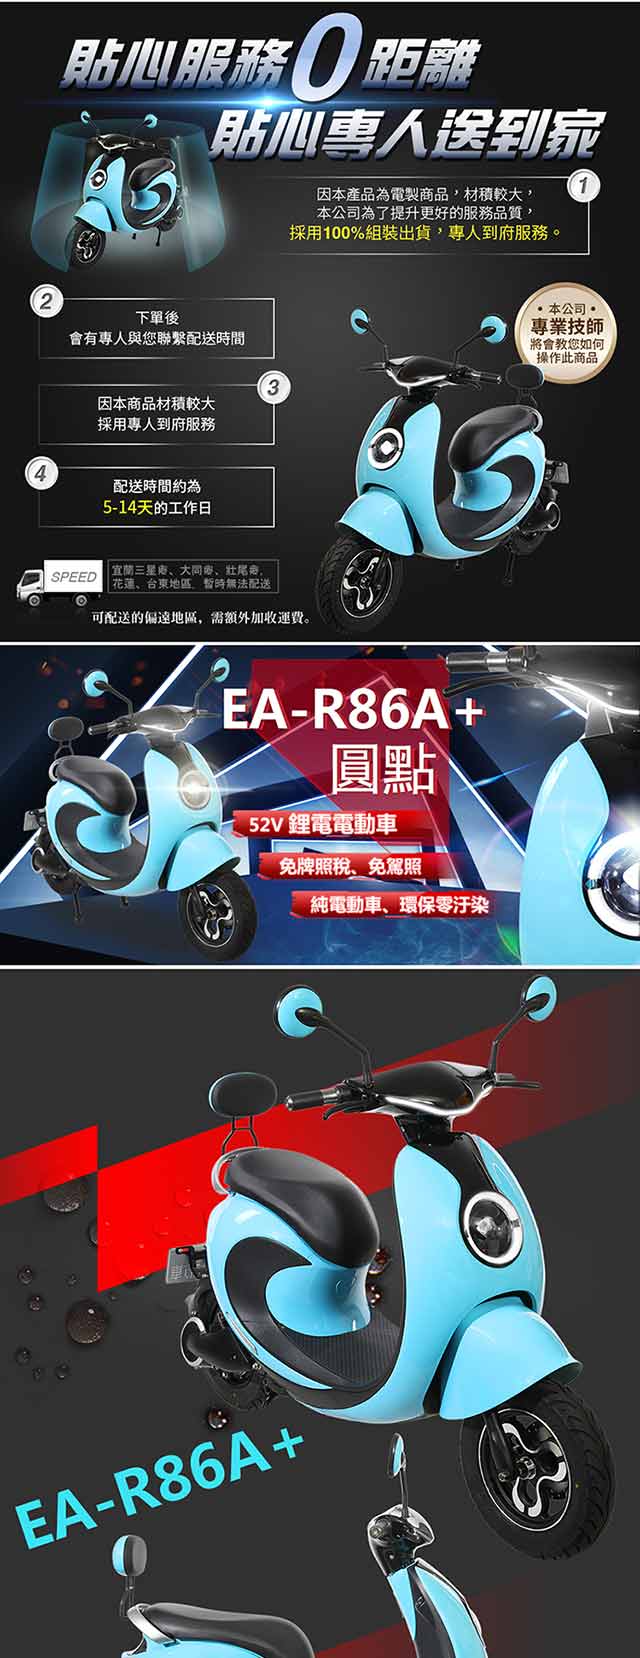 【e路通】EA-R86A+ 圓點 52V鋰電電池 500W LED燈 液晶儀表 電動車